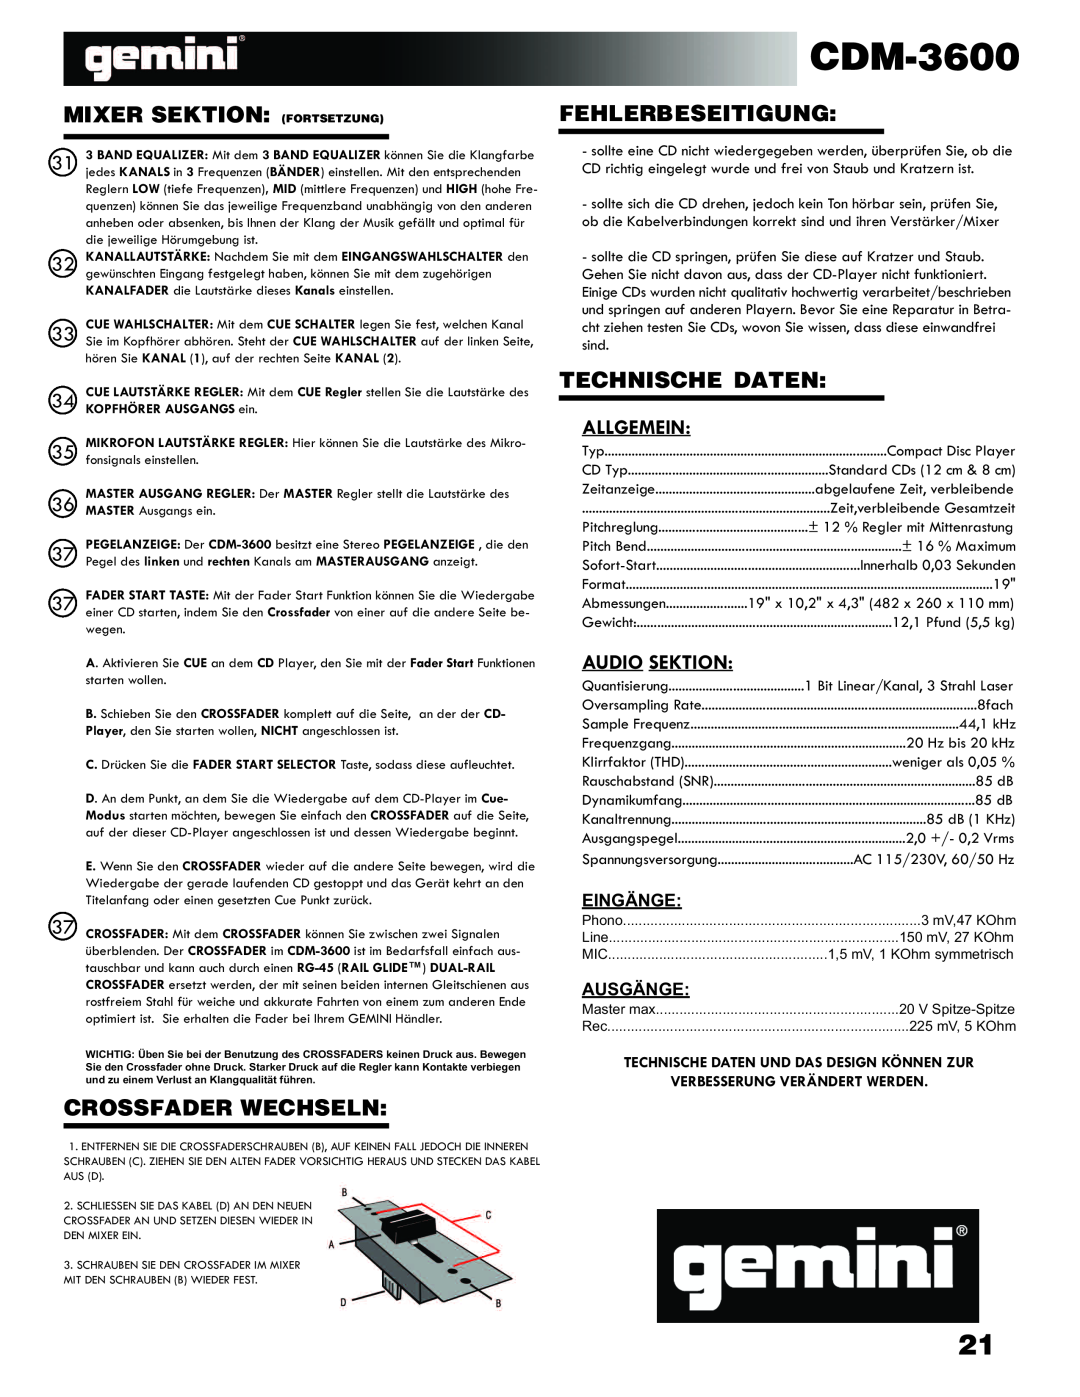 Gemini CDM-3600 manual Mixer Sektion Fortsetzung, Crossfader Wechseln, Fehlerbeseitigung, Technische Daten 